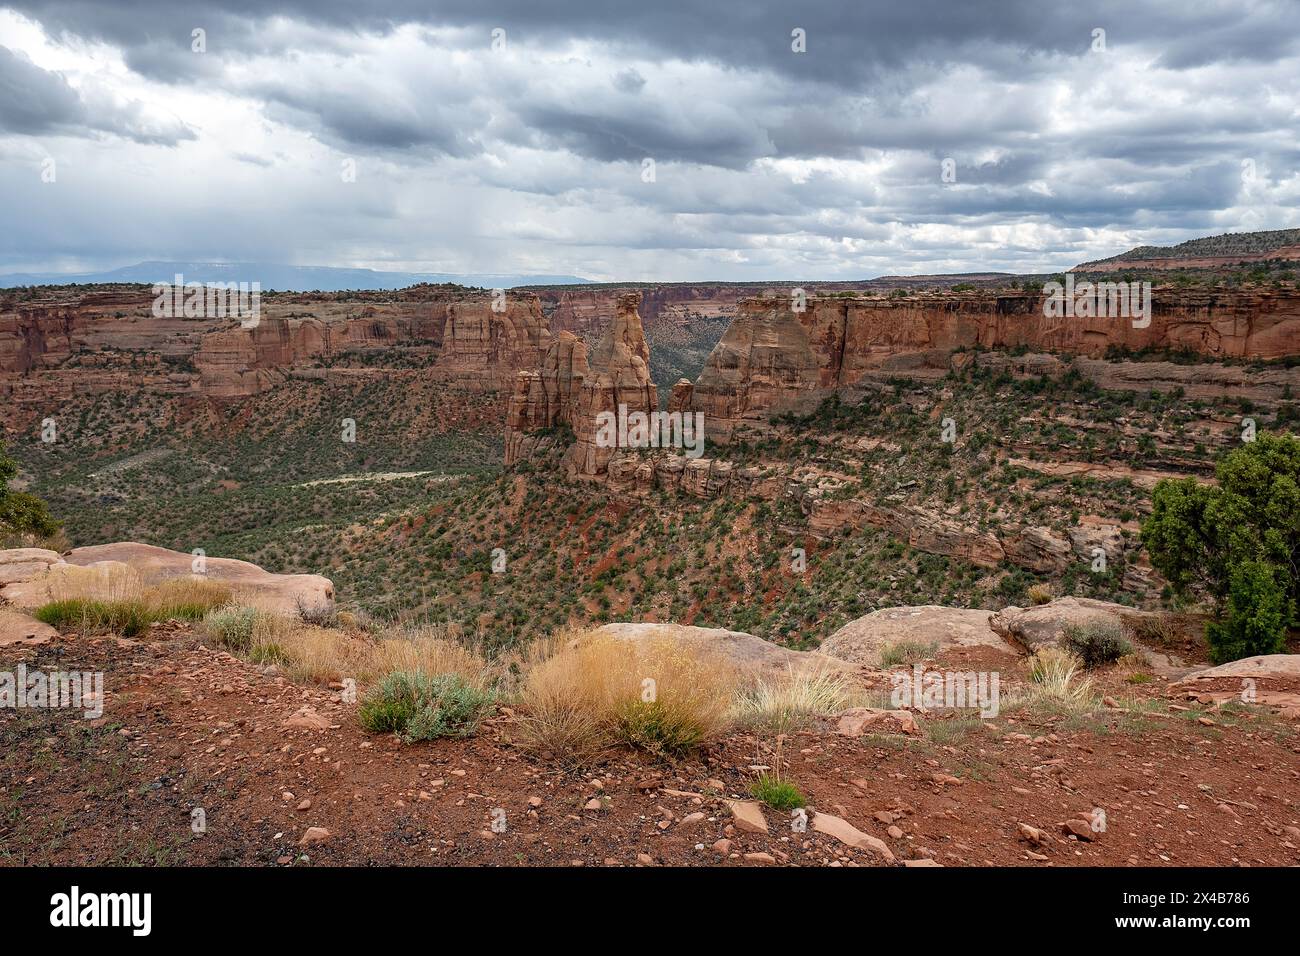 Mai 2024: Saftige Grüntöne aus Pinyon, wacholder und Salbei heben das satte Rot der tiefen Canyonwände im Colorado National Monument in Grand Junction, Colorado hervor. (Bild: © Larry Clouse/Csm/Cal Sport Media) Stockfoto